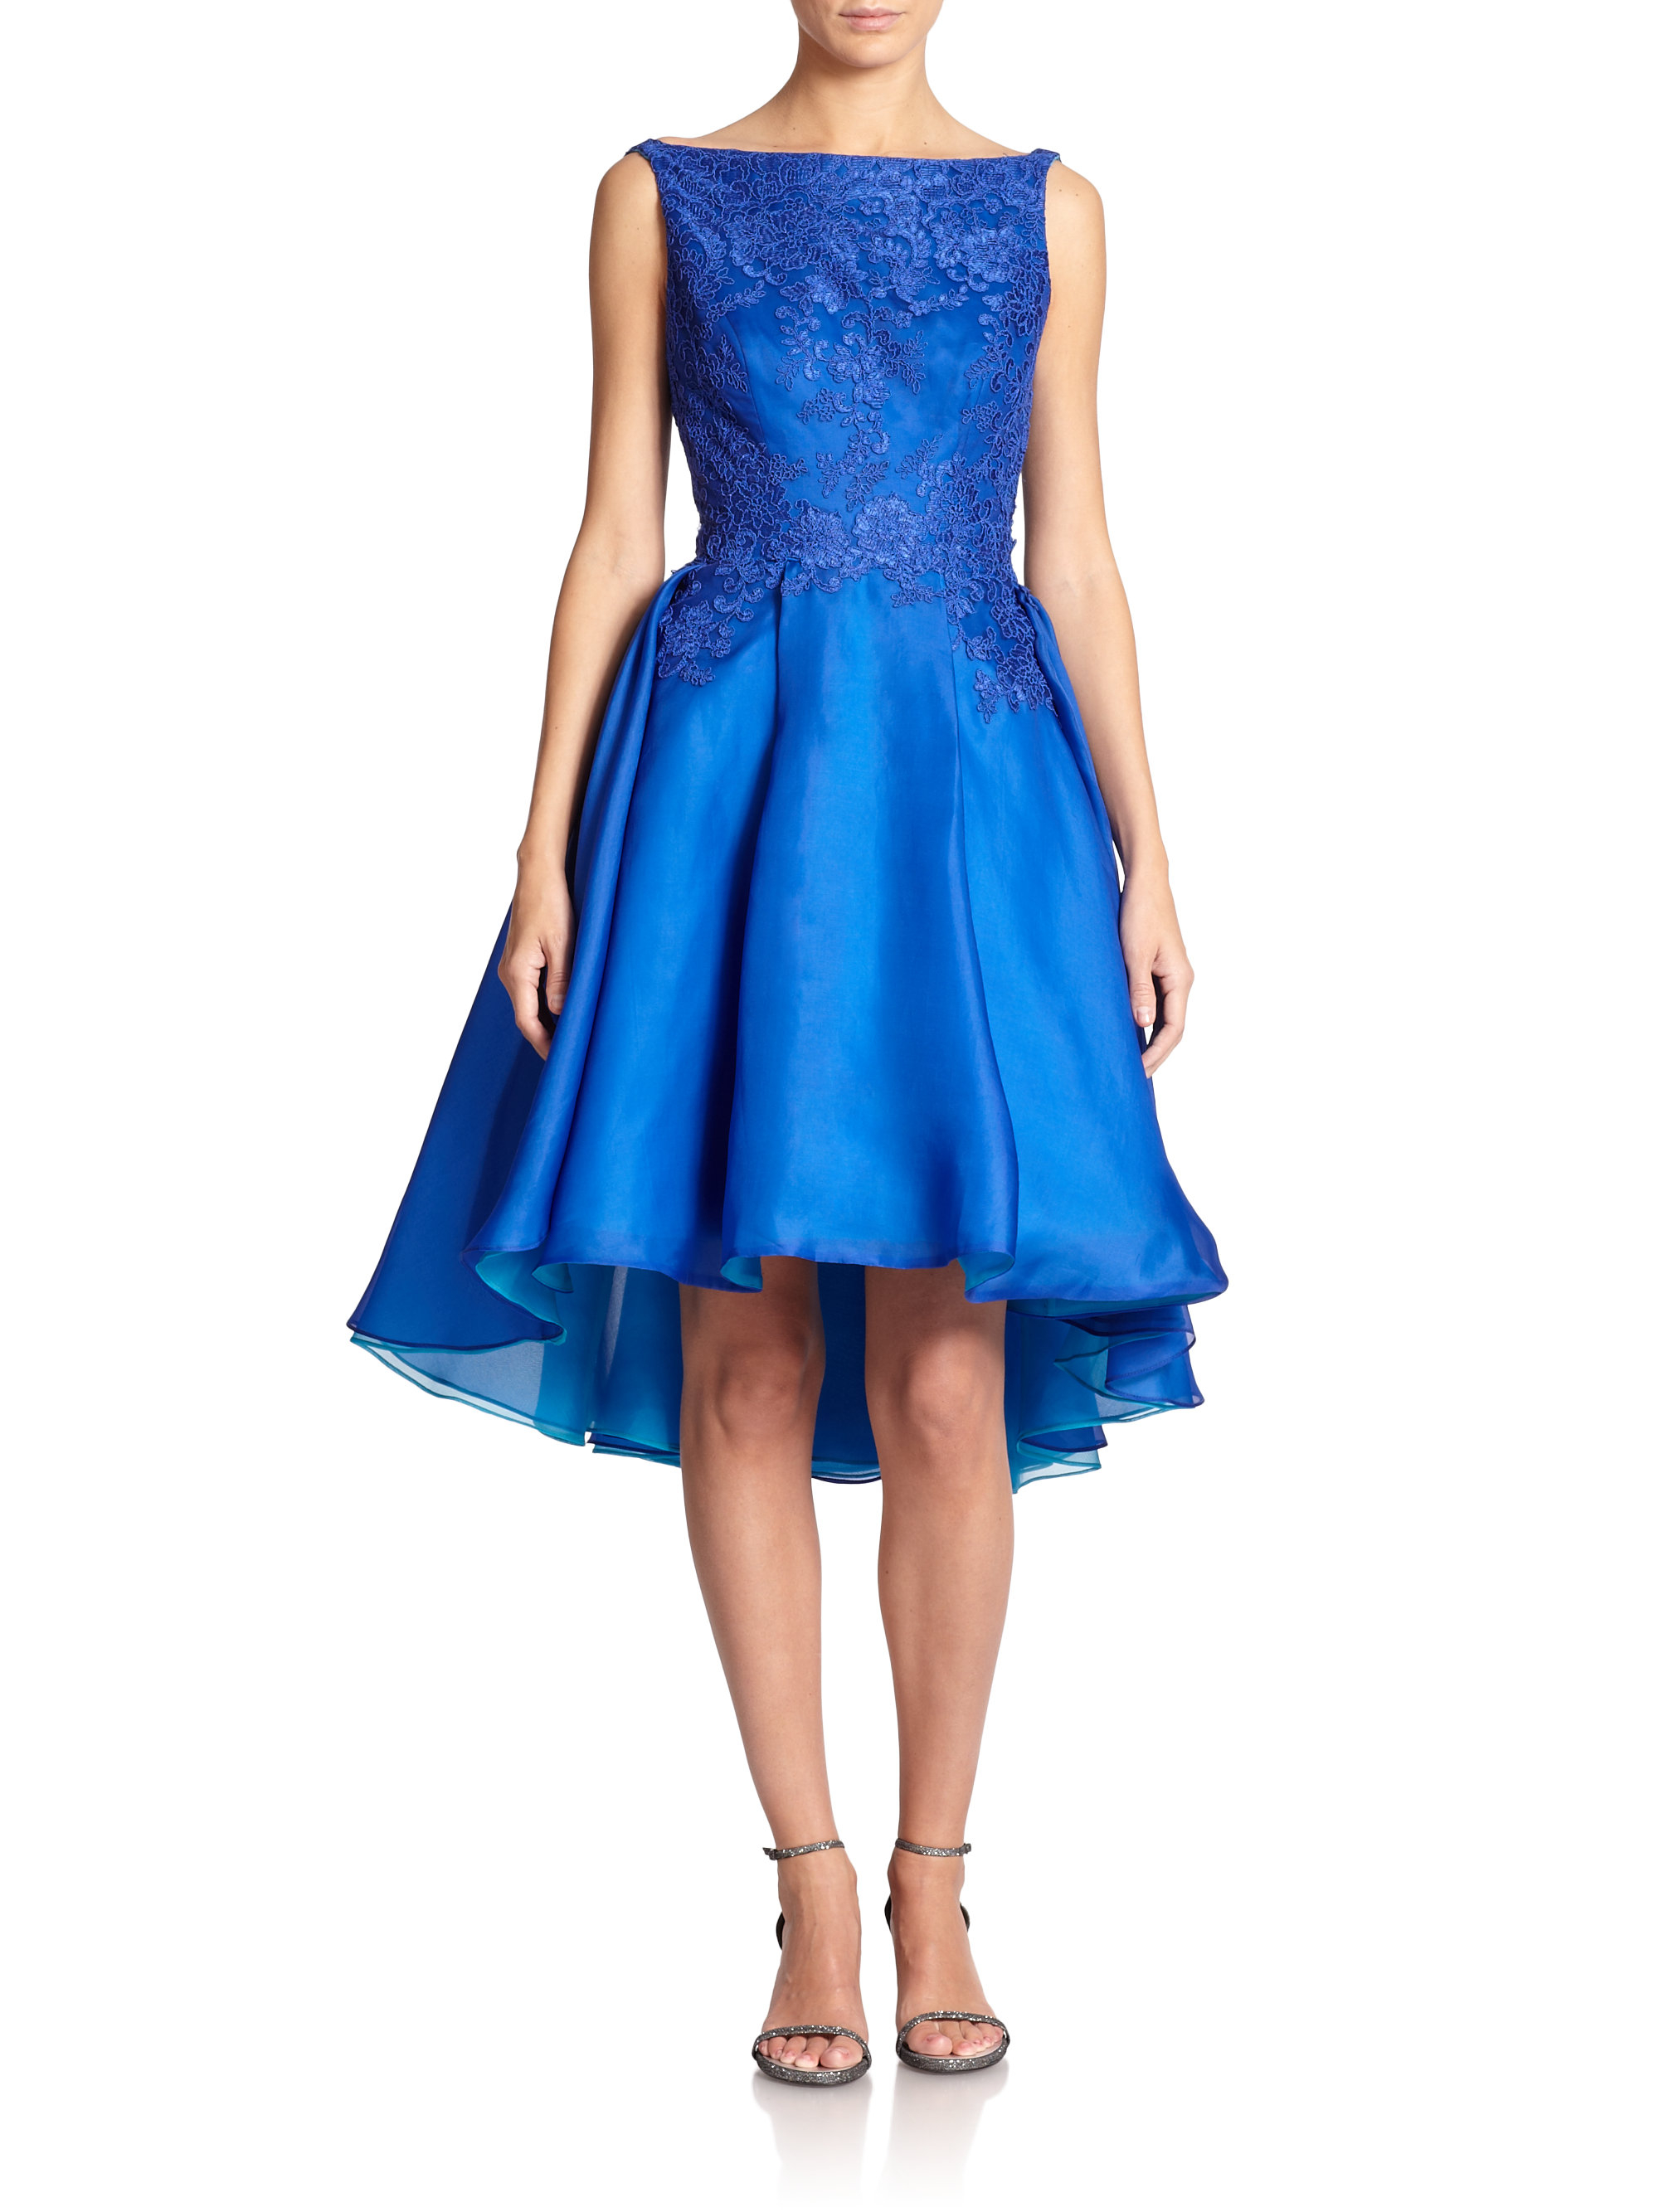 Lyst - Ml monique lhuillier Silk Organza Boatneck Dress in Blue